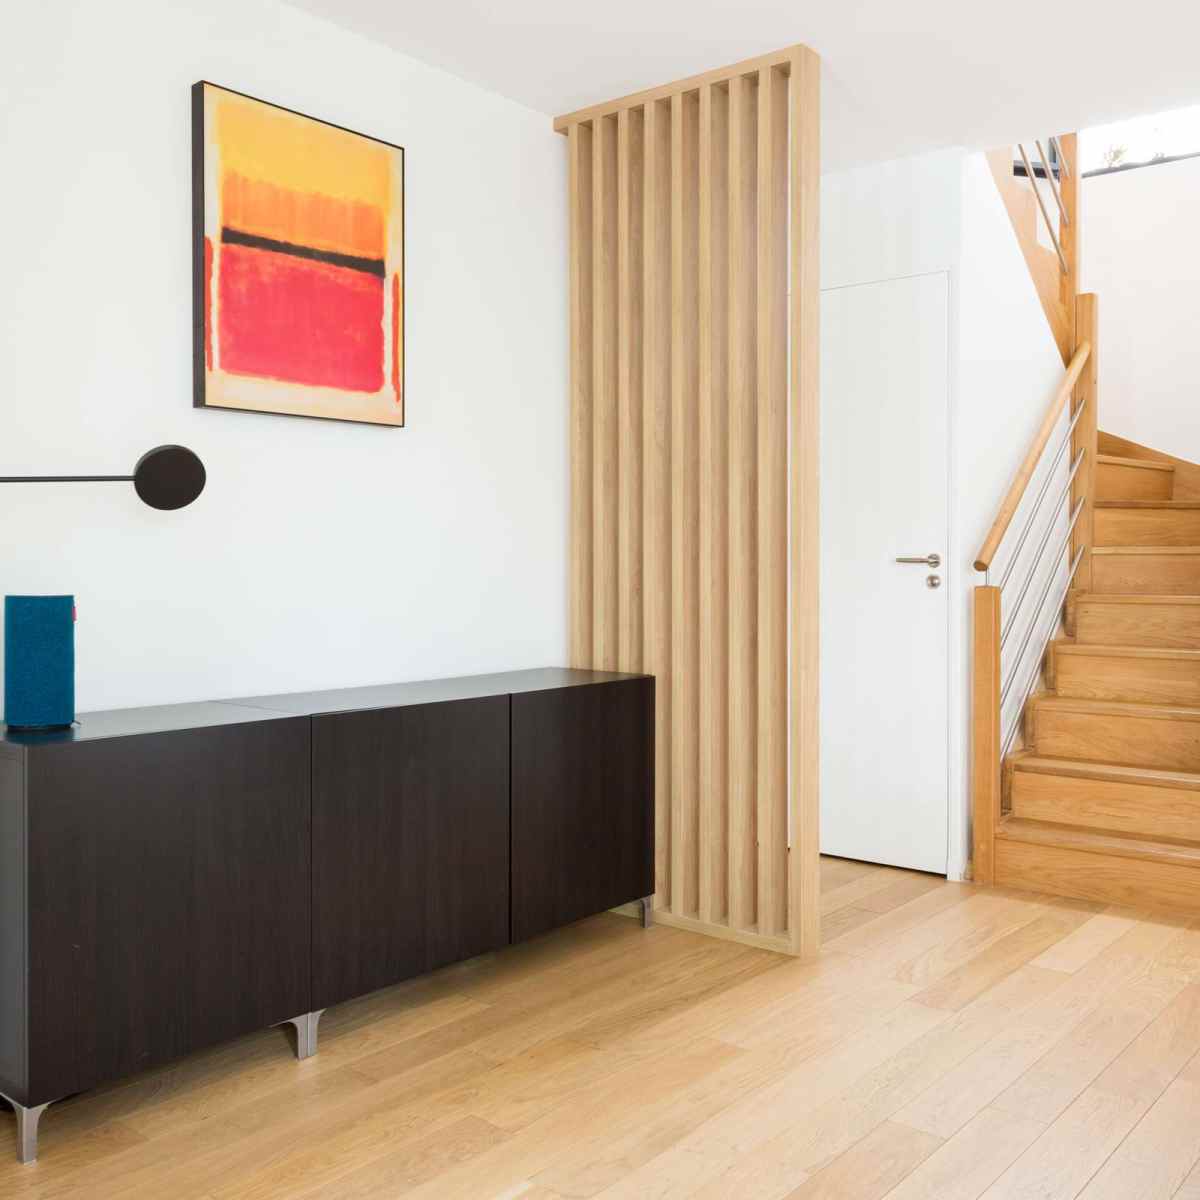 Le claustra bois sur mesure installé dans cet appartement, permet de créer un espace pour l'entrée